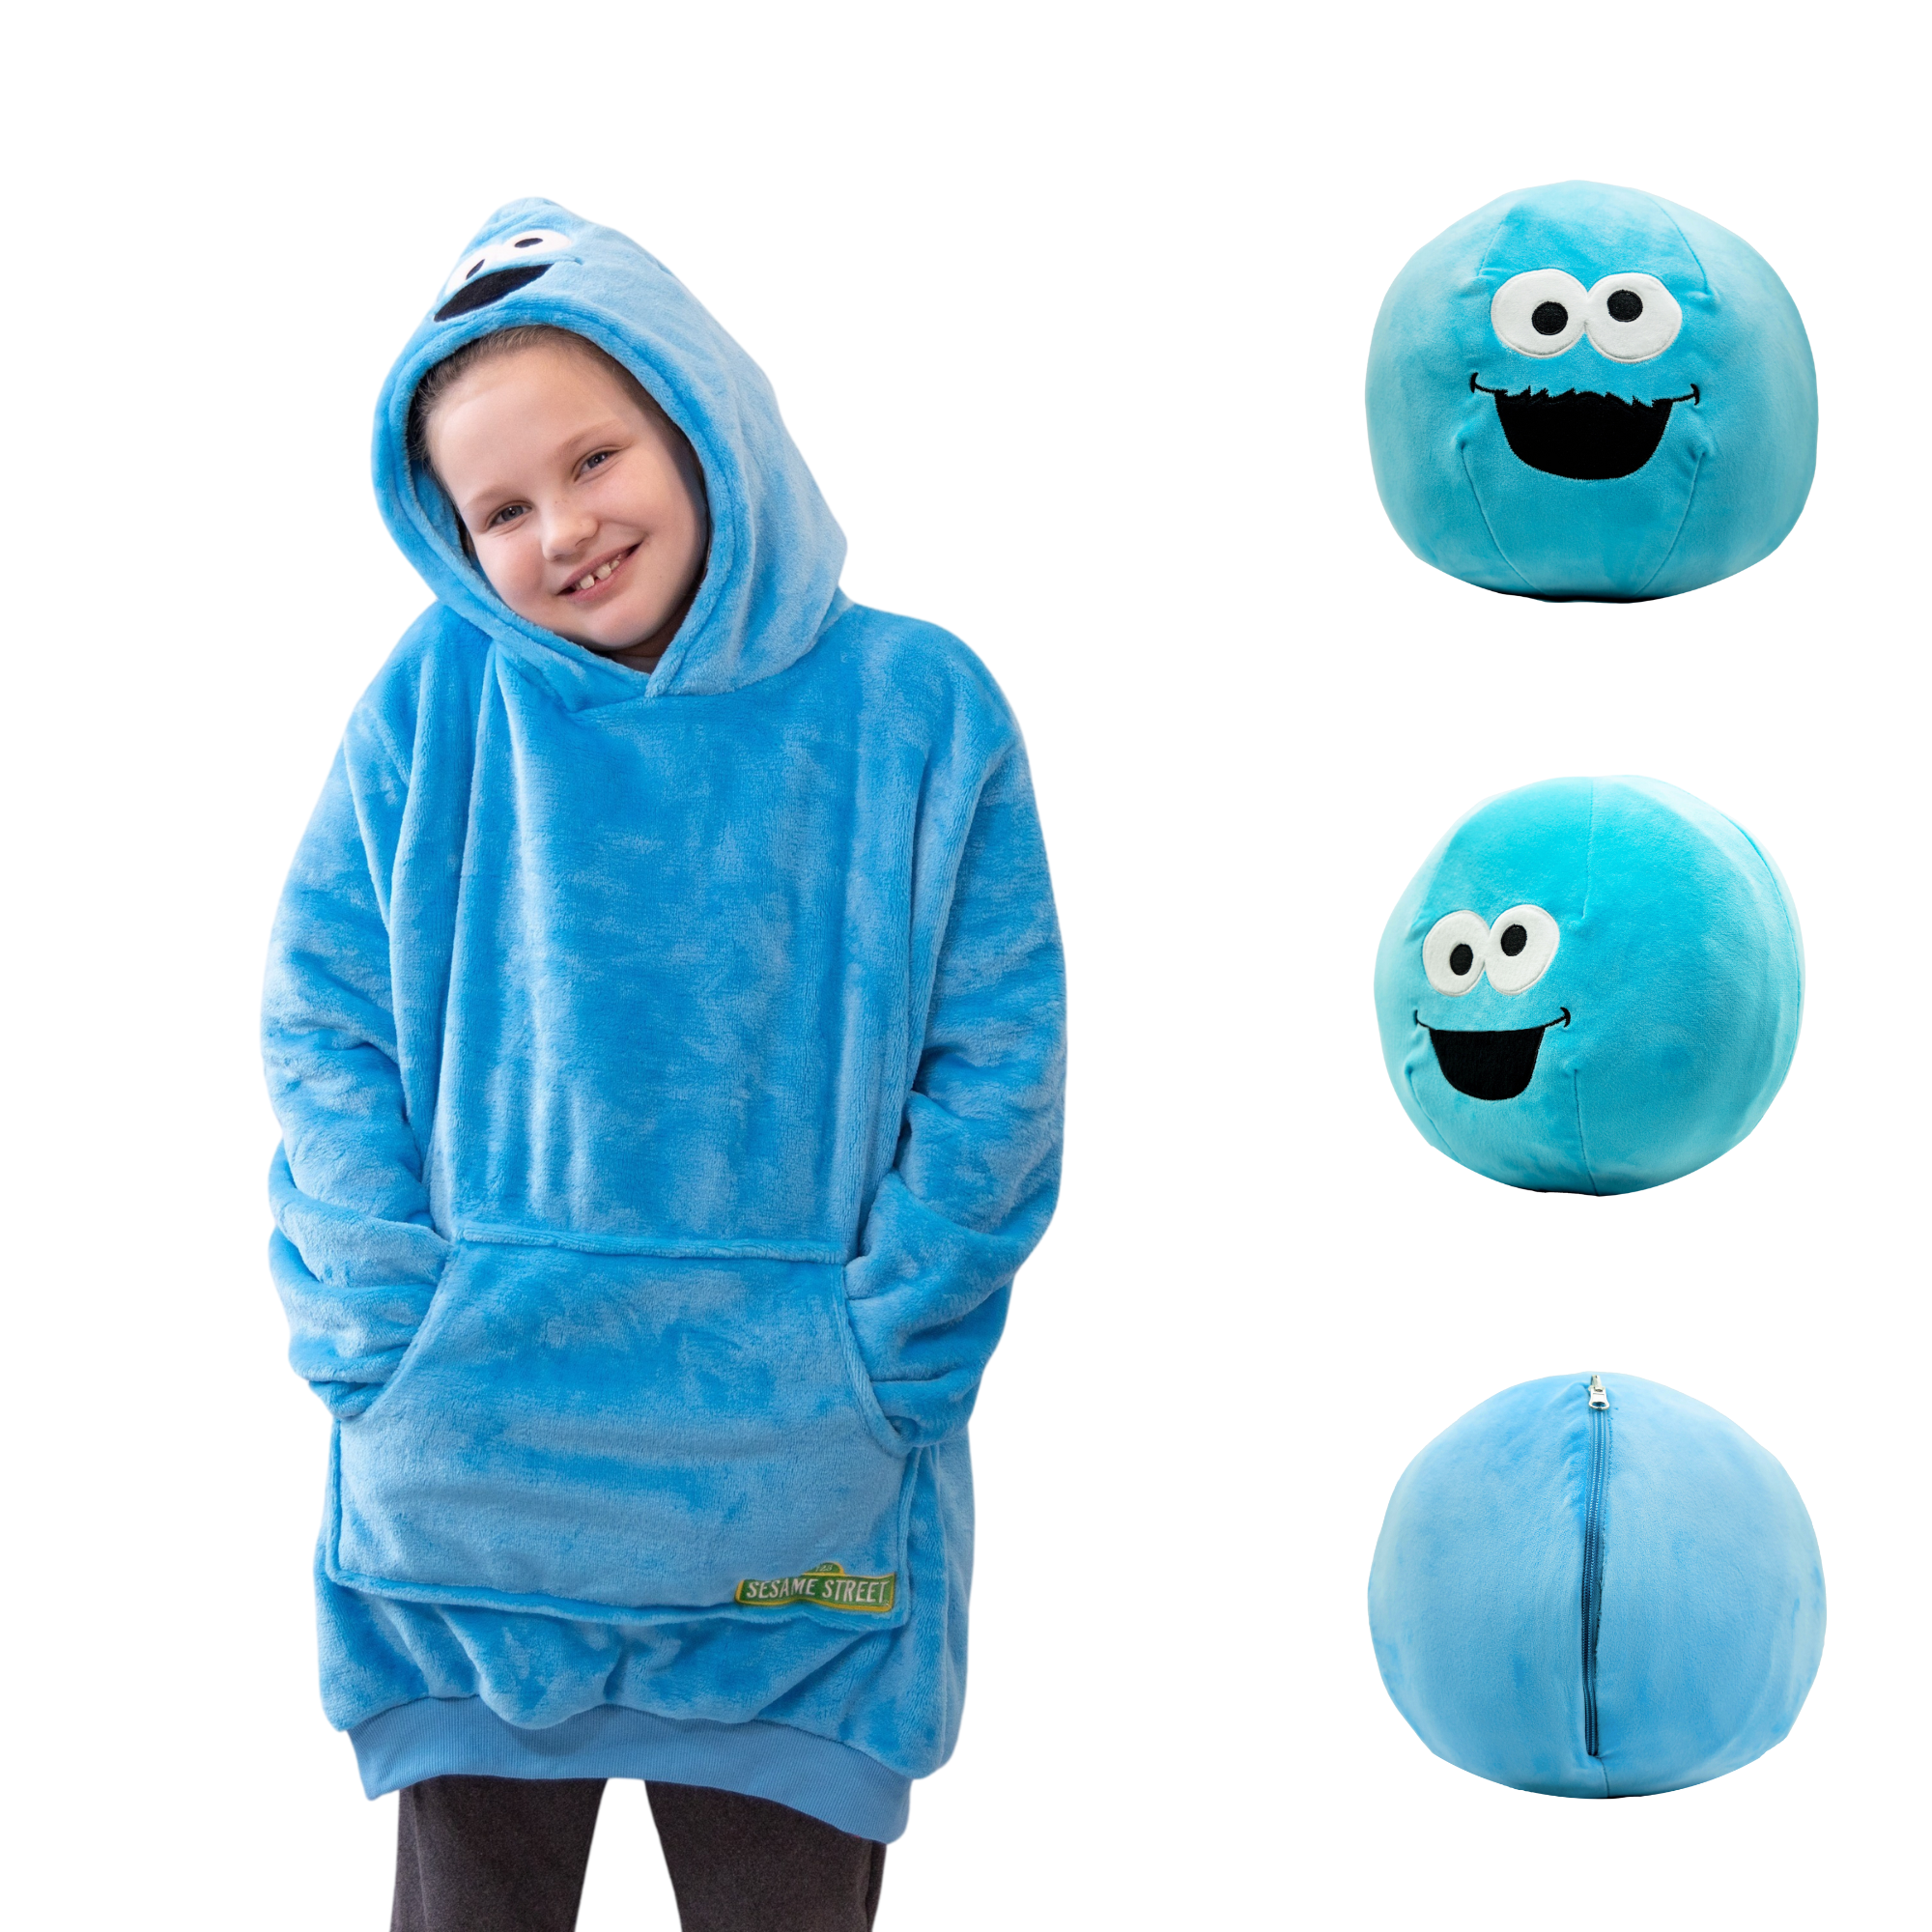 Sesame Street | Cookie Monster Kids Snugible 2-in-1 Blanket Hoodie & Pillow